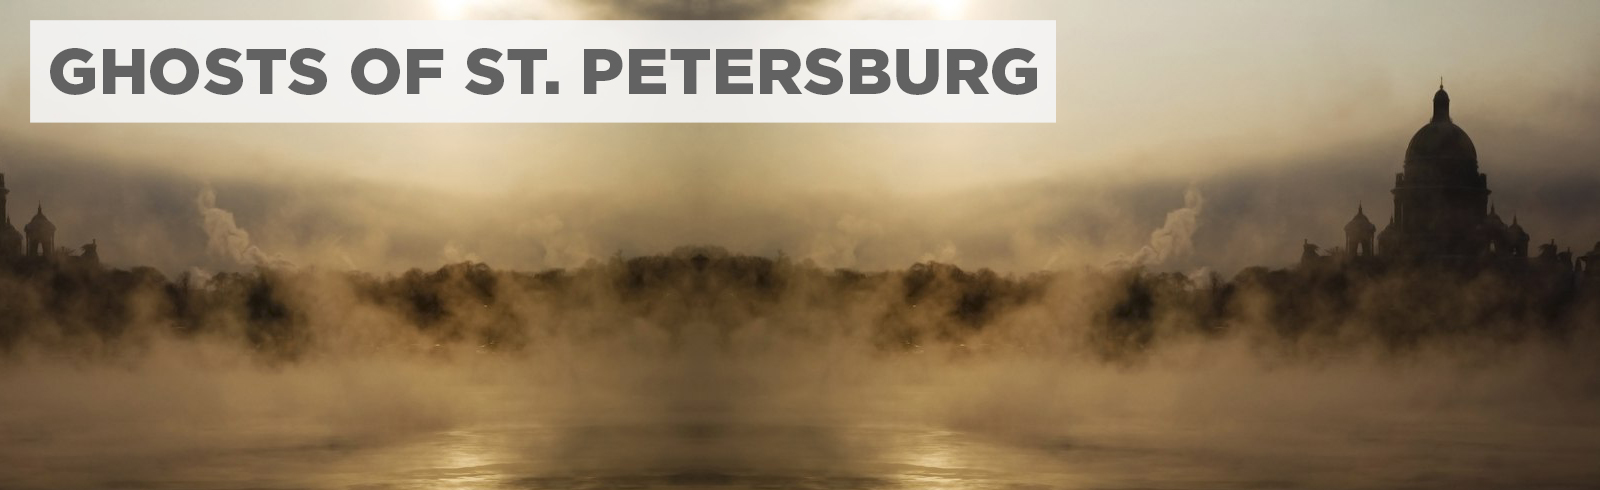 Ghosts of St. Petersburg